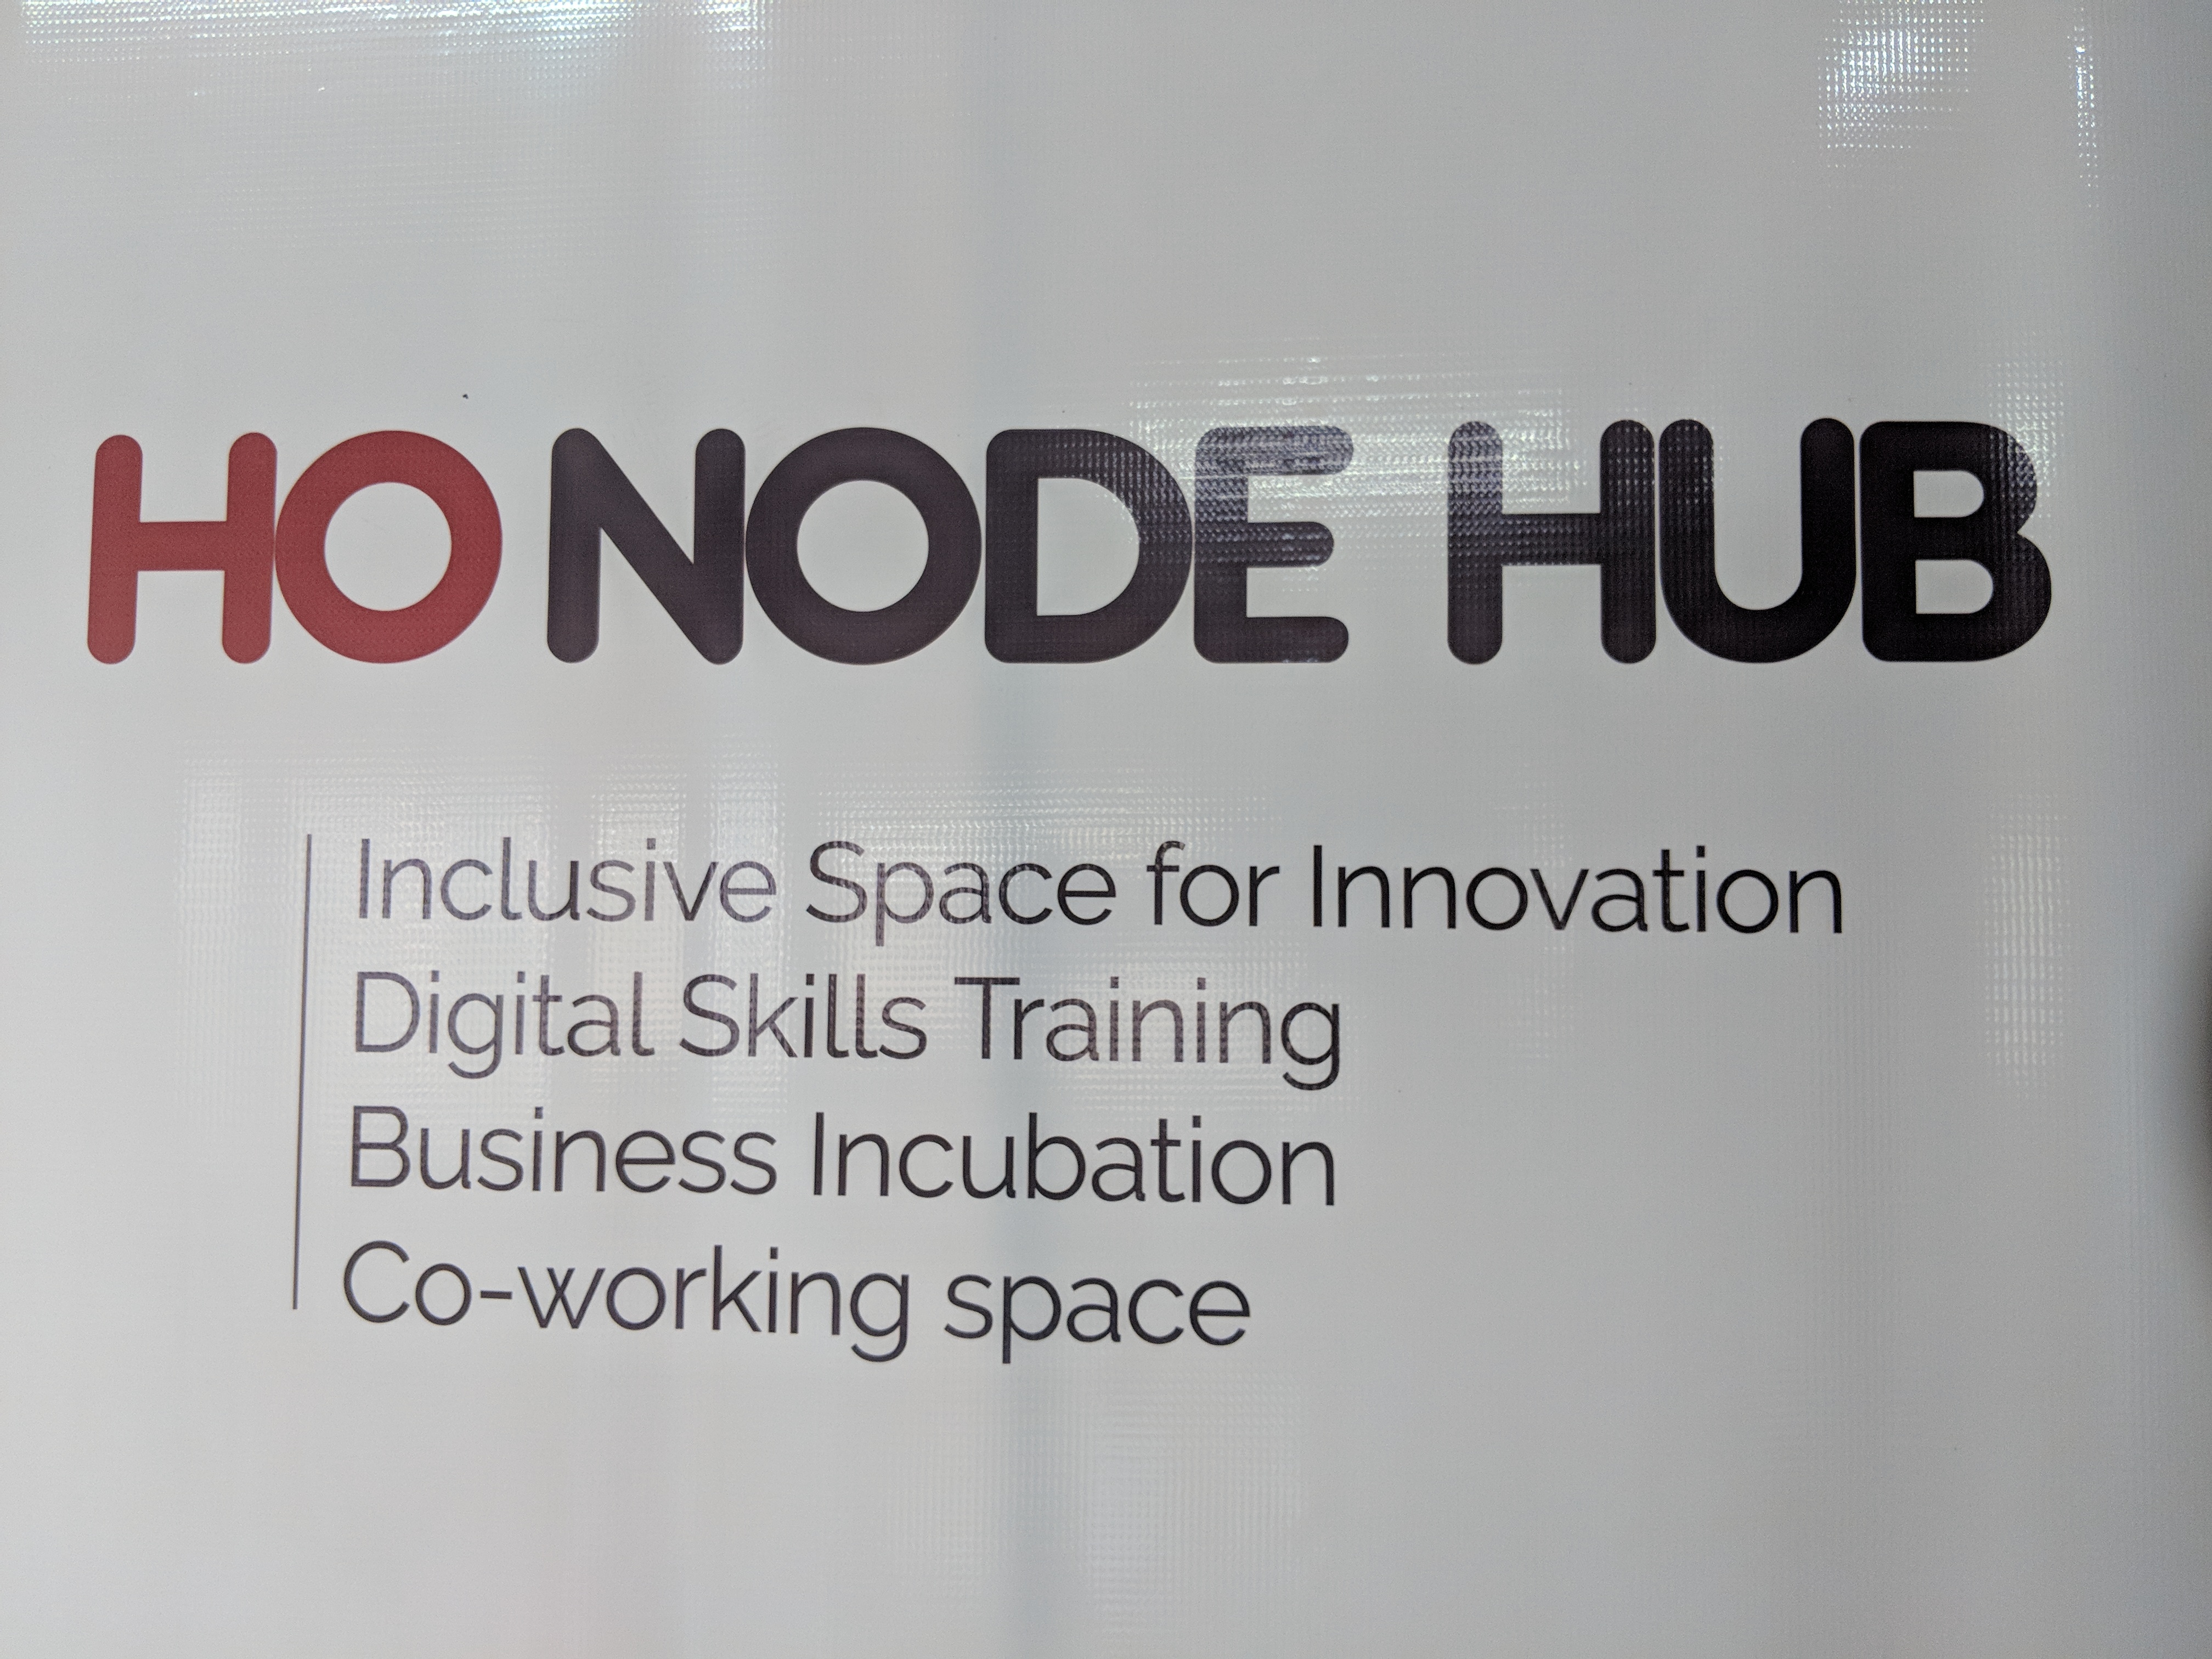 Exclusive Tech Tour: Ho Node Hub